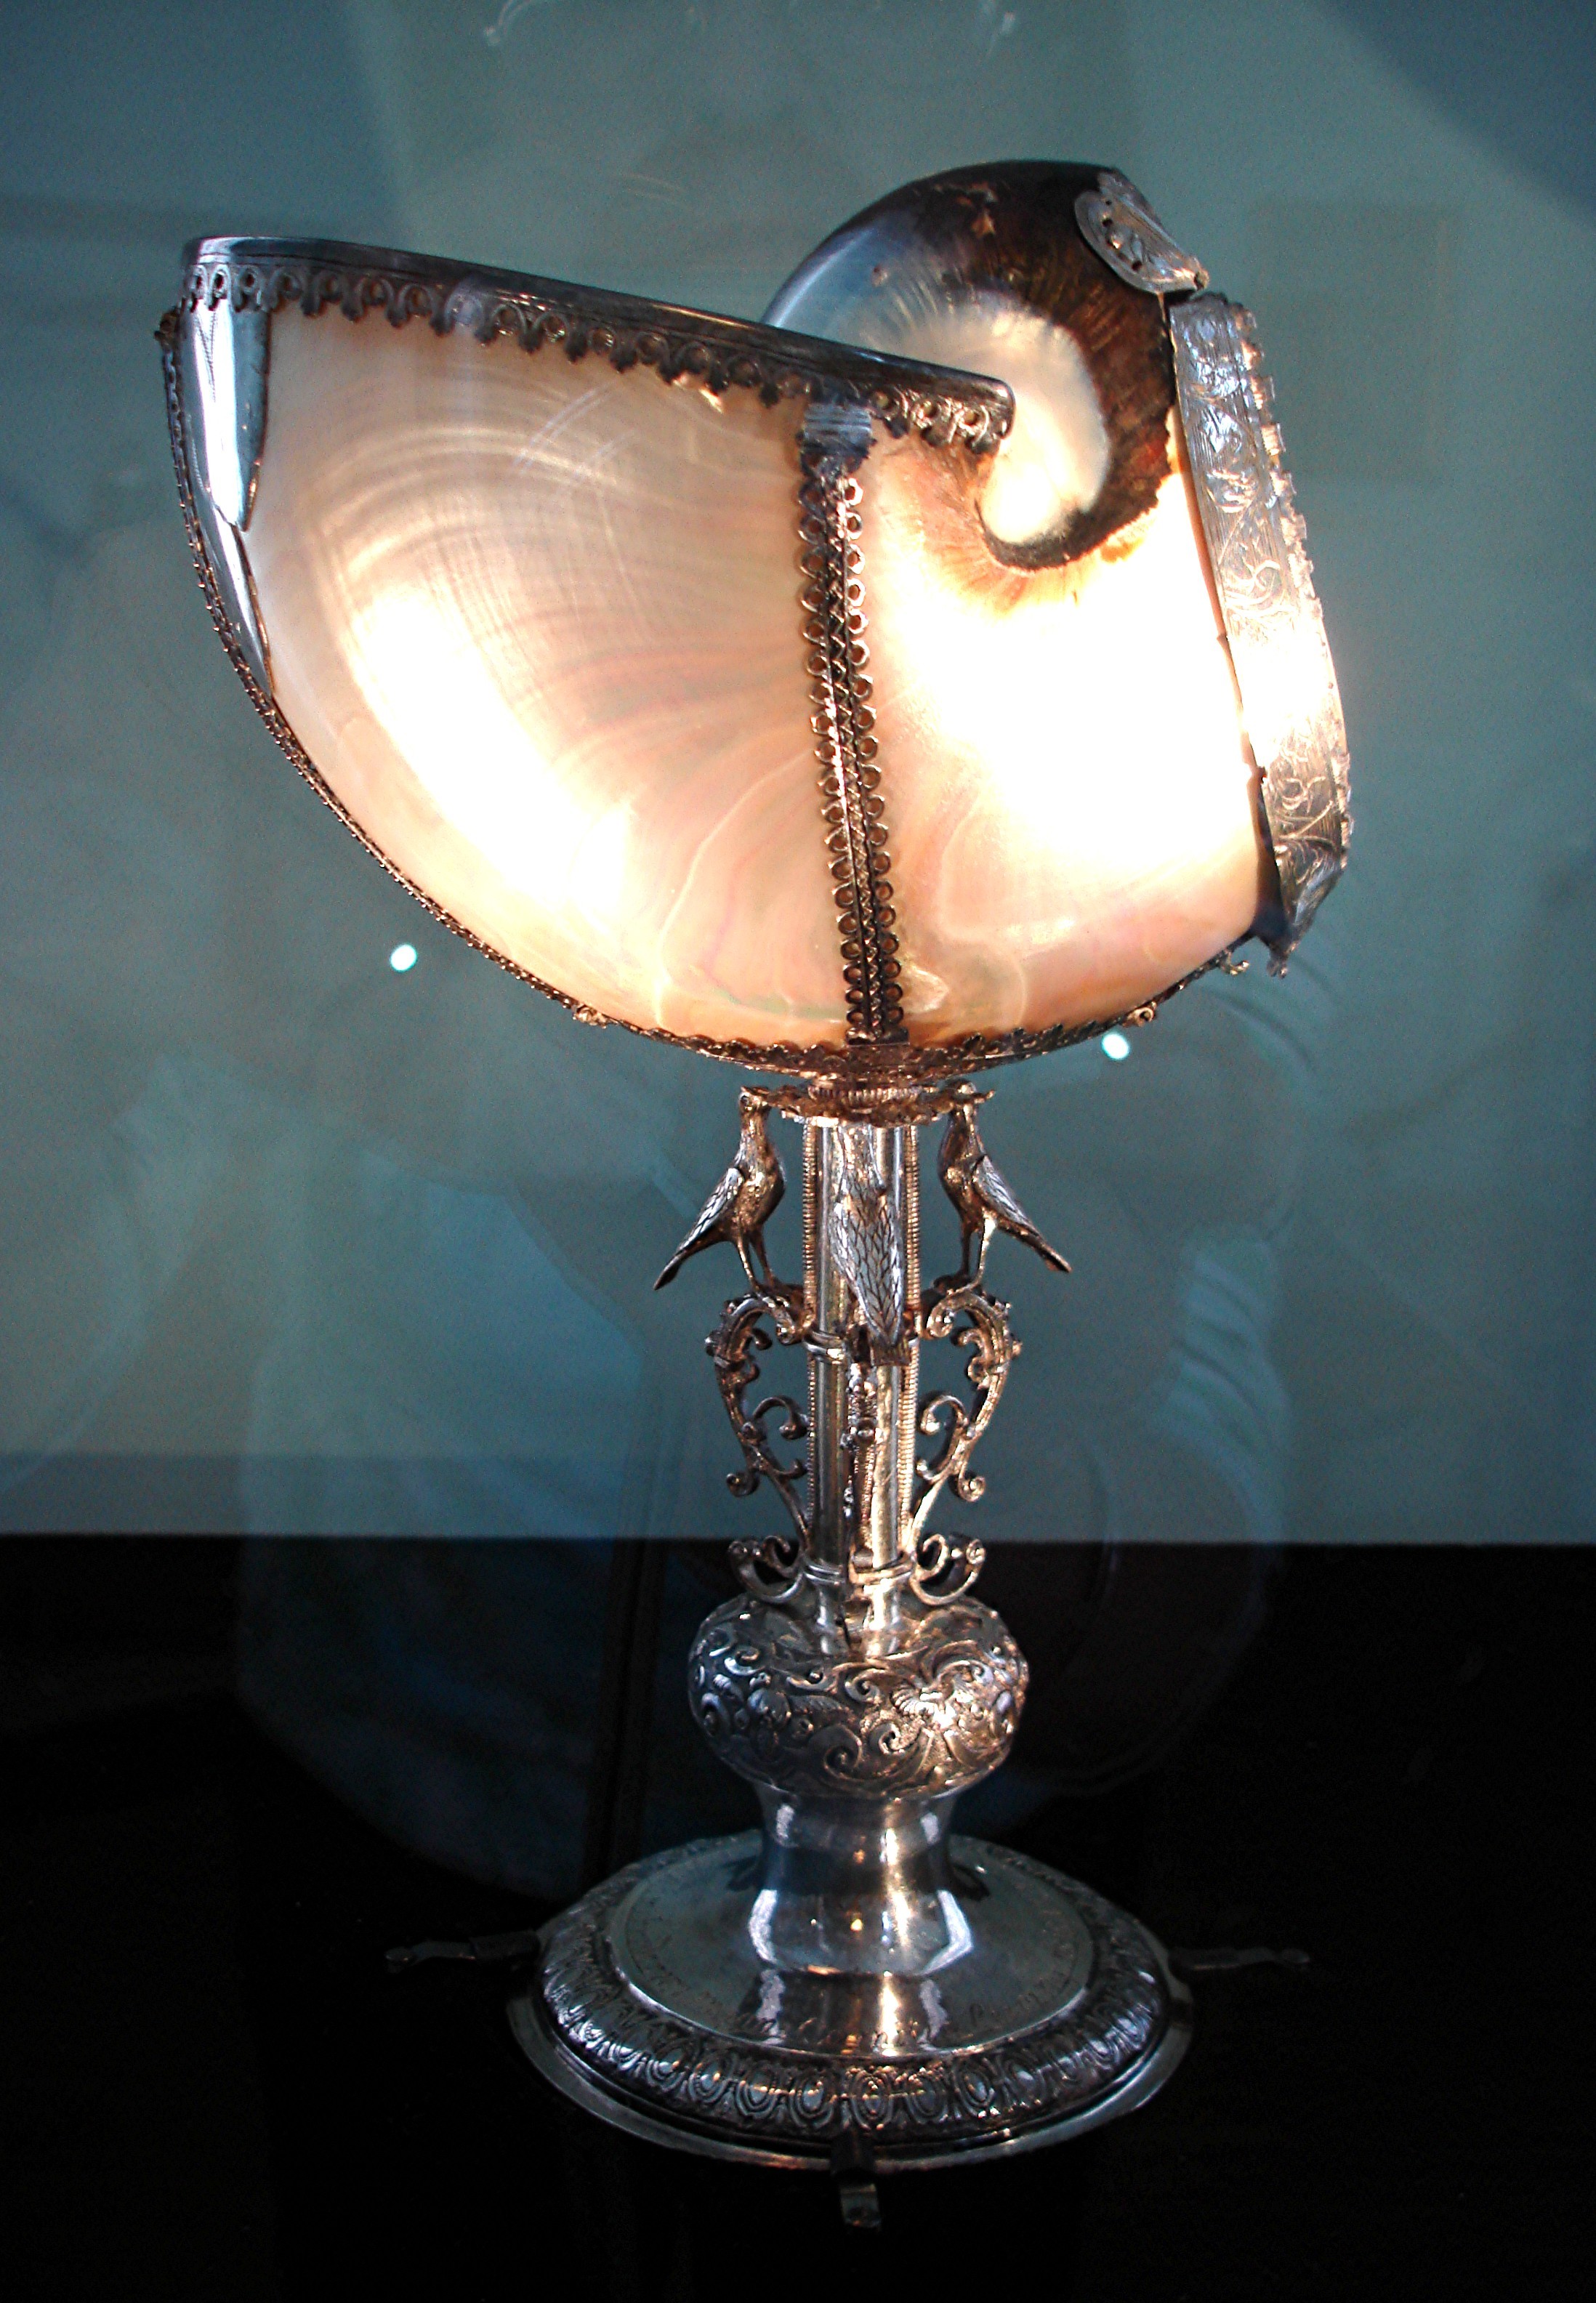 Nautilus-Pokal; Pokal; Geschenk des Grafen Friedrich Magnus zu Leiningen-Hardenburg; um 1600 (Stadtmuseum Bad Dürkheim, Museumsgesellschaft Bad Dürkheim e.V. CC BY-NC-SA)